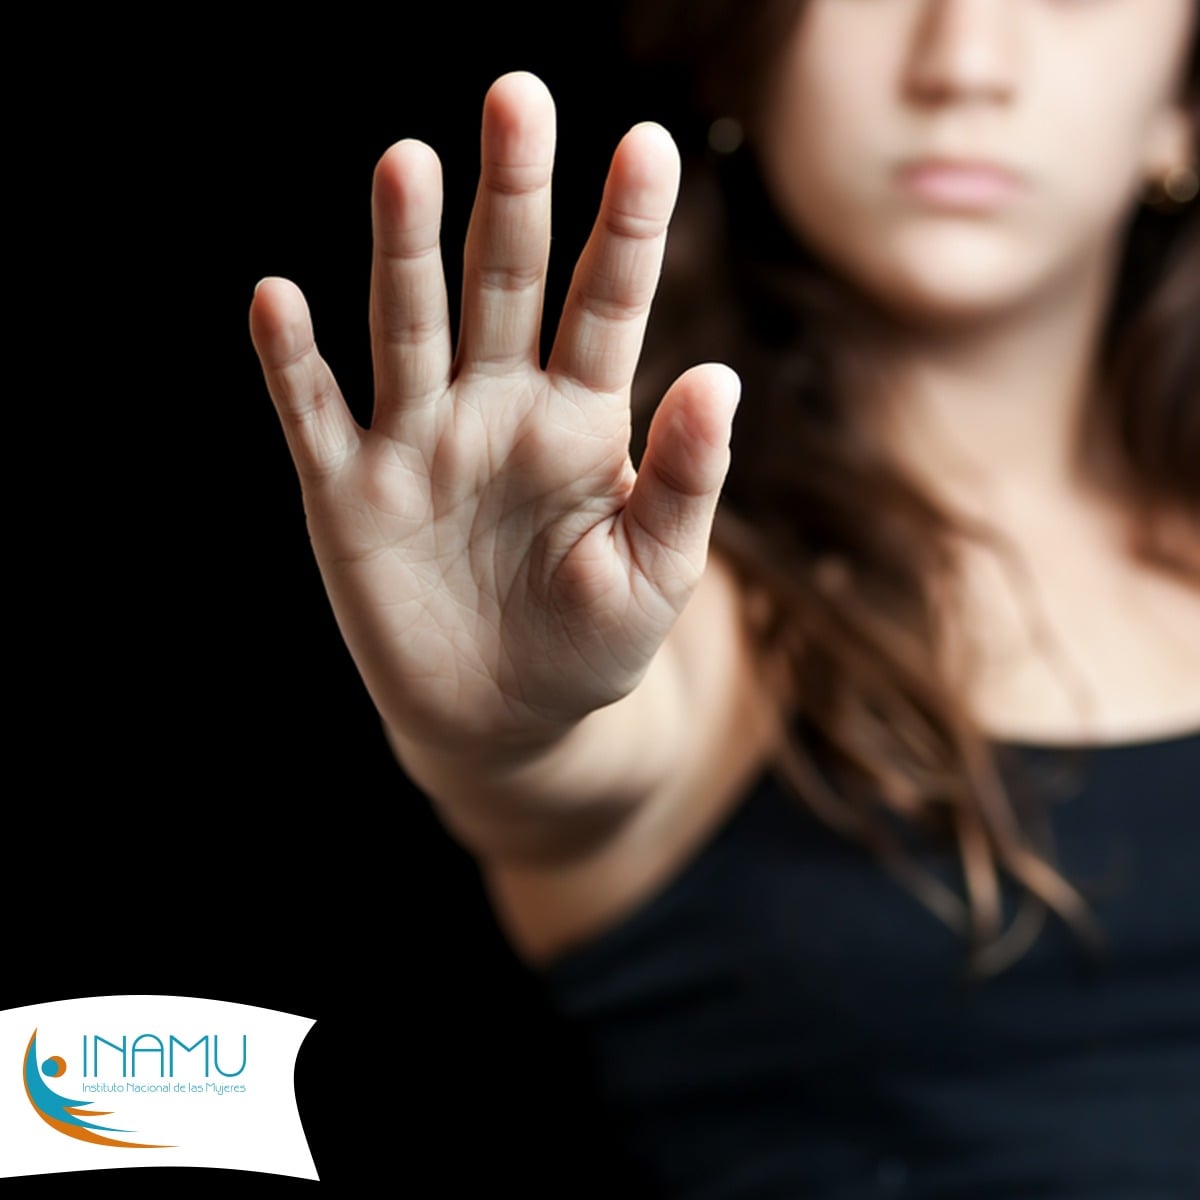 imagen de una mano abierta en señal de detener la violencia contra las mujeres